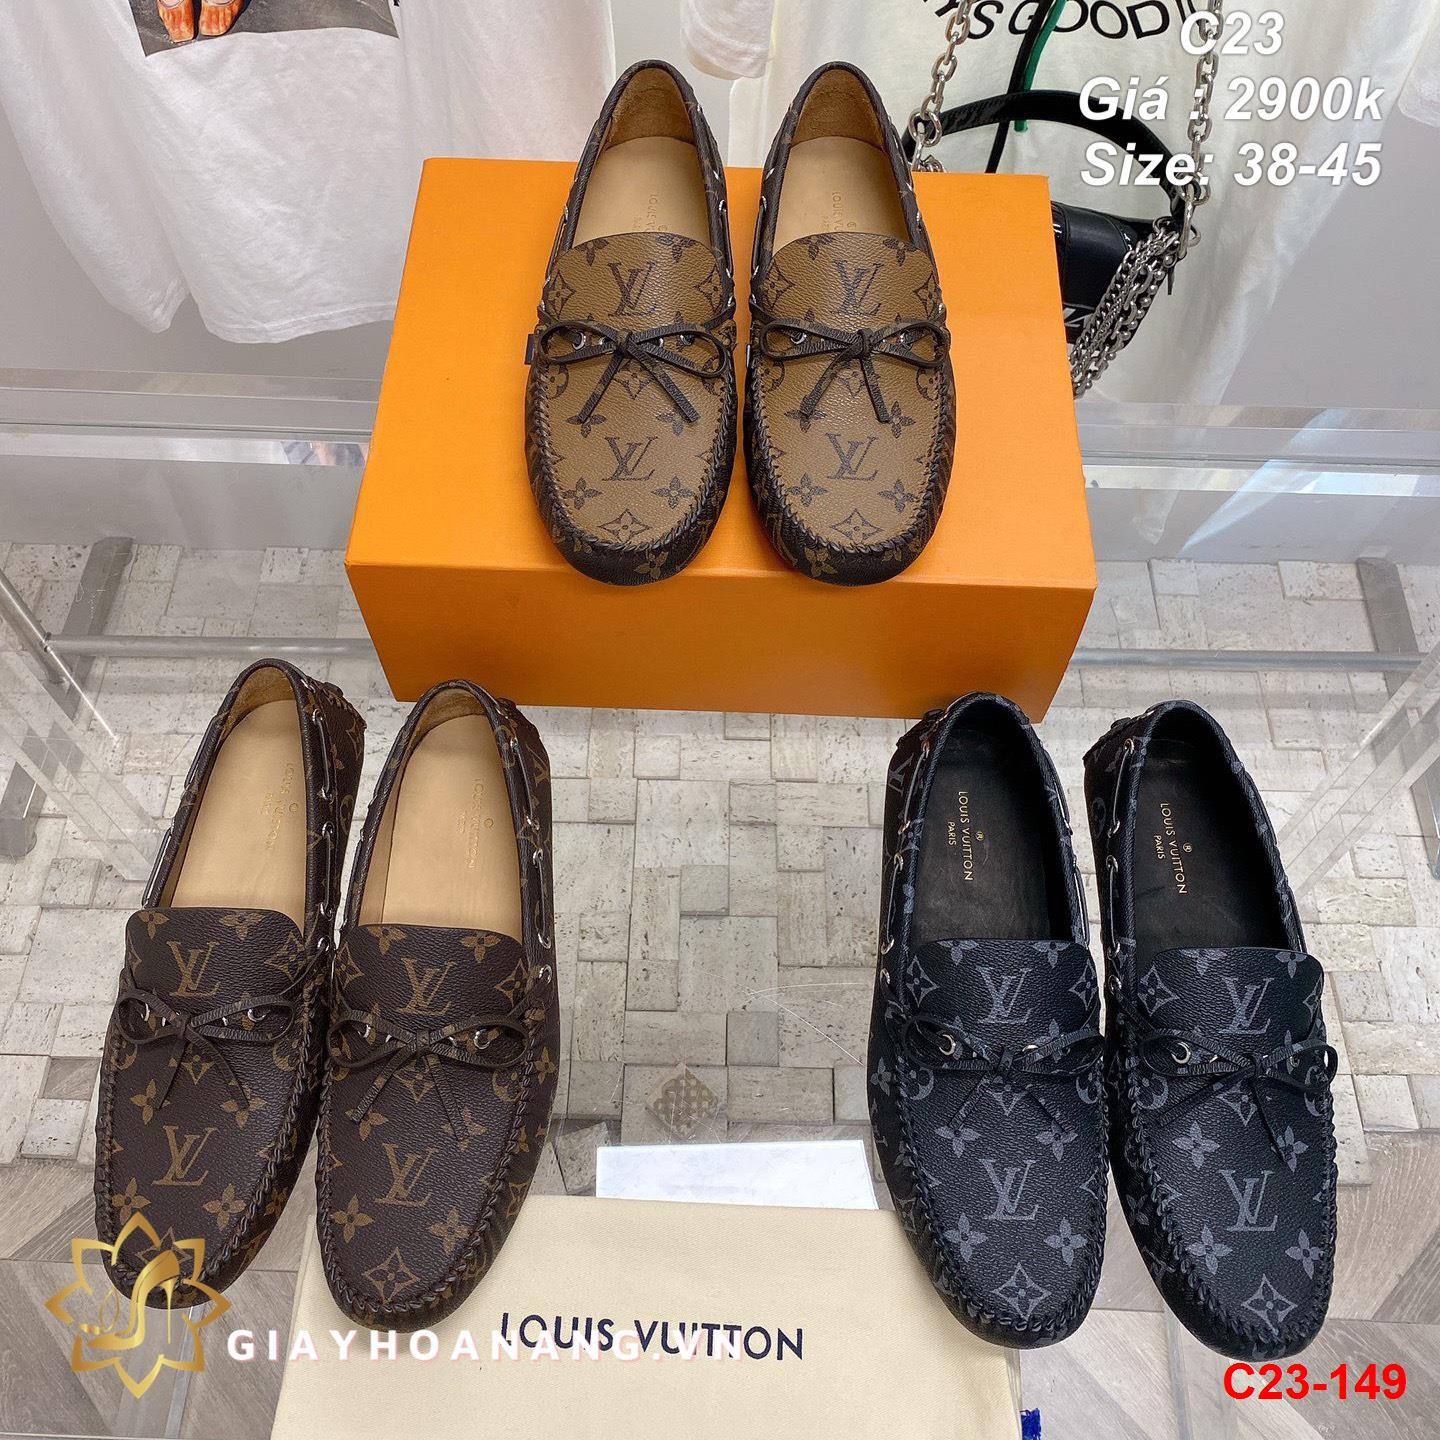 C23-149 Louis Vuitton giày lười siêu cấp